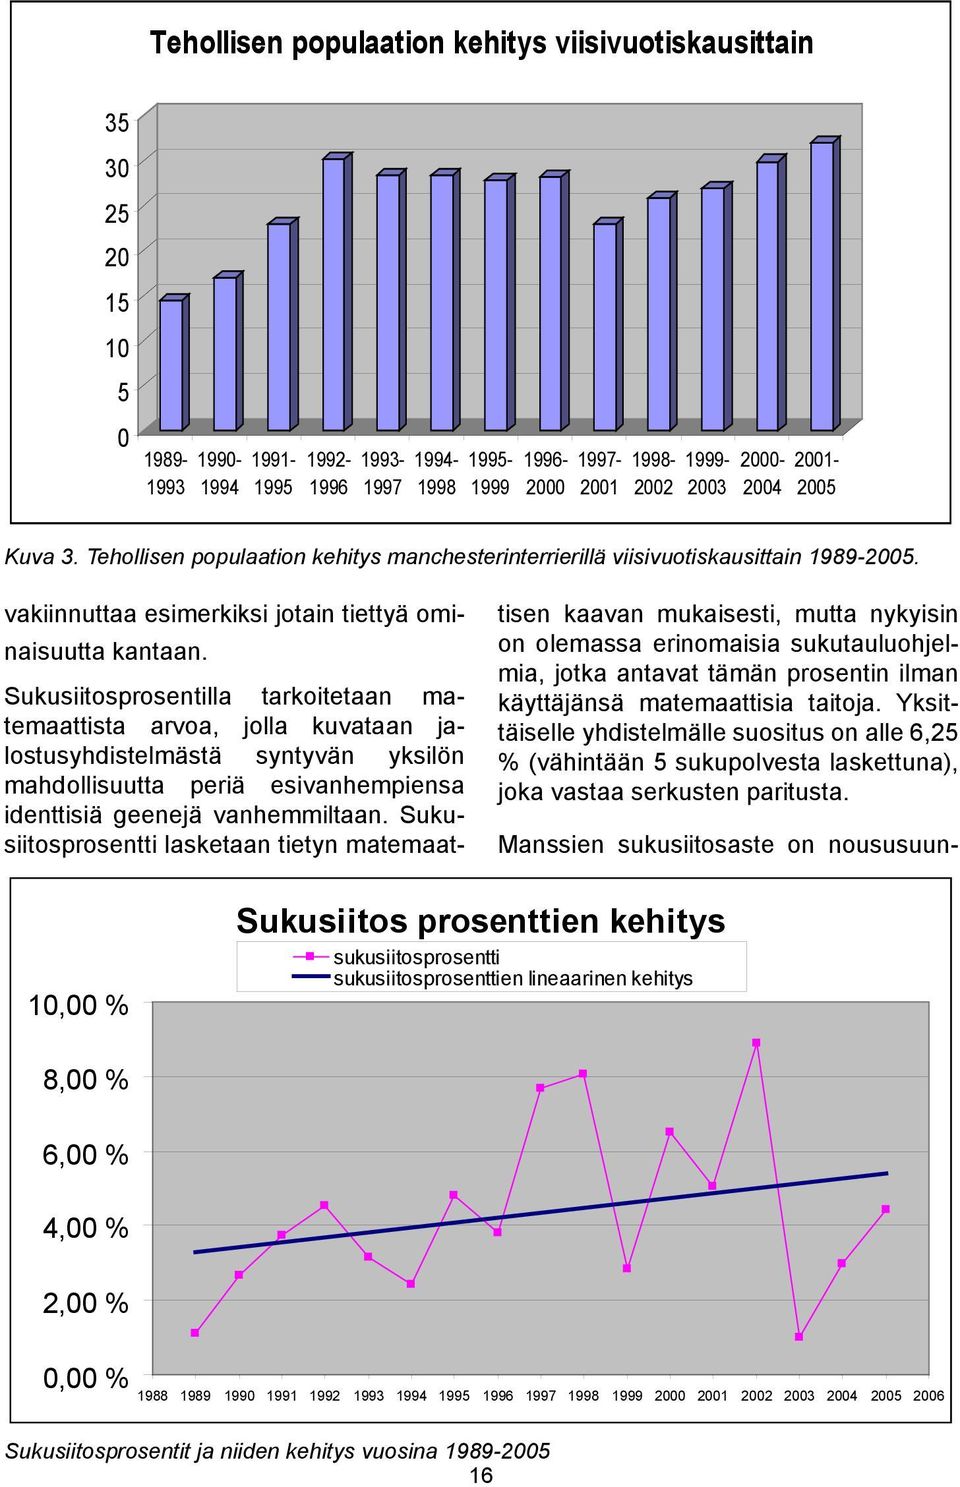 Myös muutamalla 1990- ja 2000- luvulla jalostuskäytössä olleella nartulla on ollut voimakas vaikutus suomalaisessa nykypopulaatiossa.